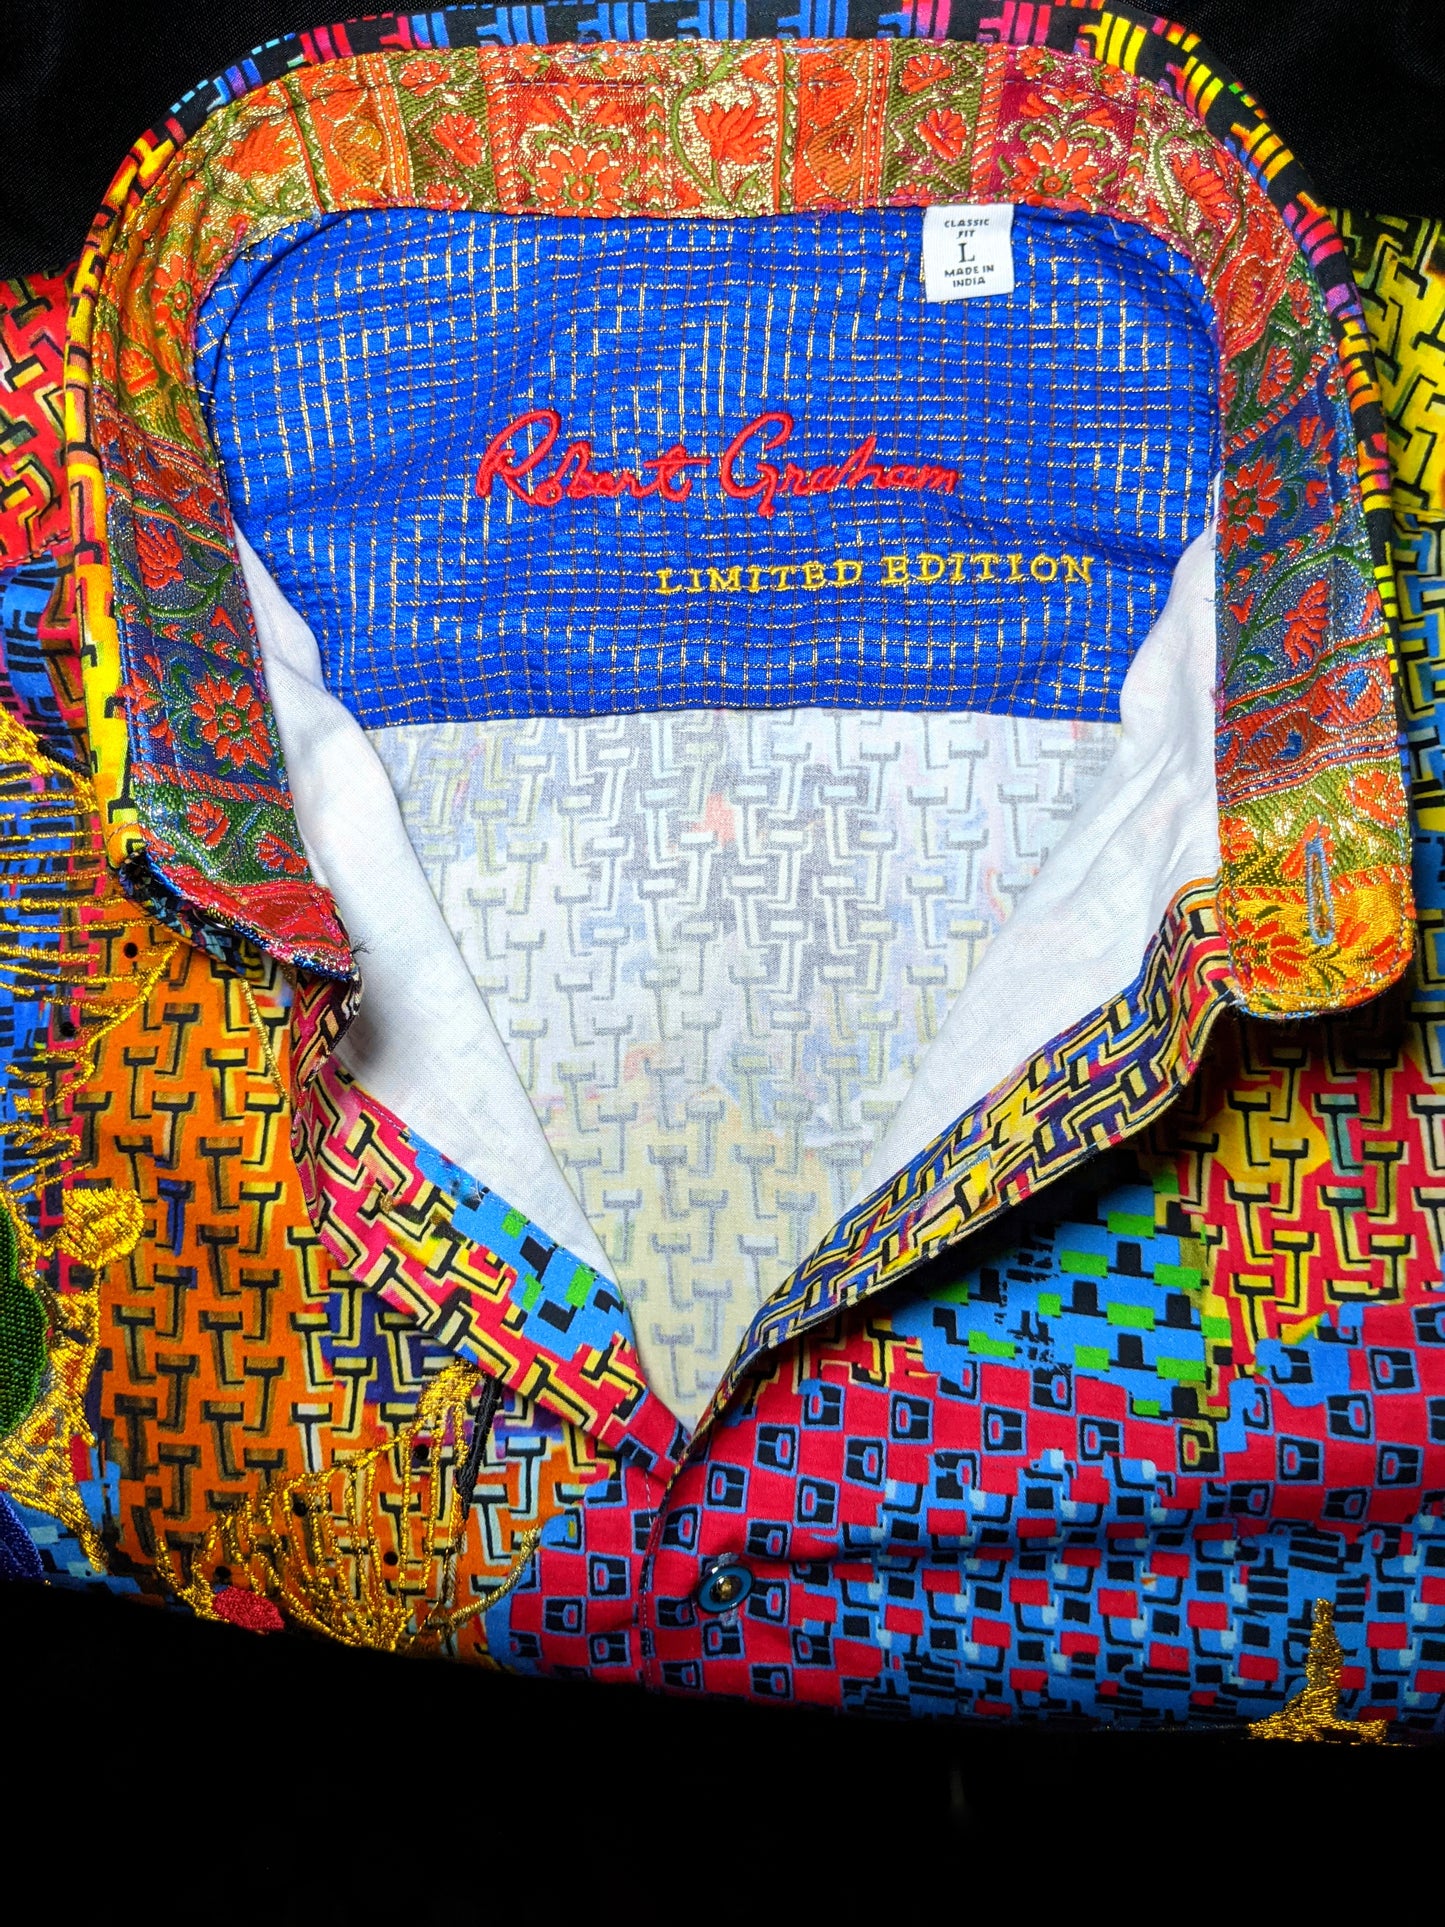 Robert Graham Hot Shot Embroidered Shirt XL NEW